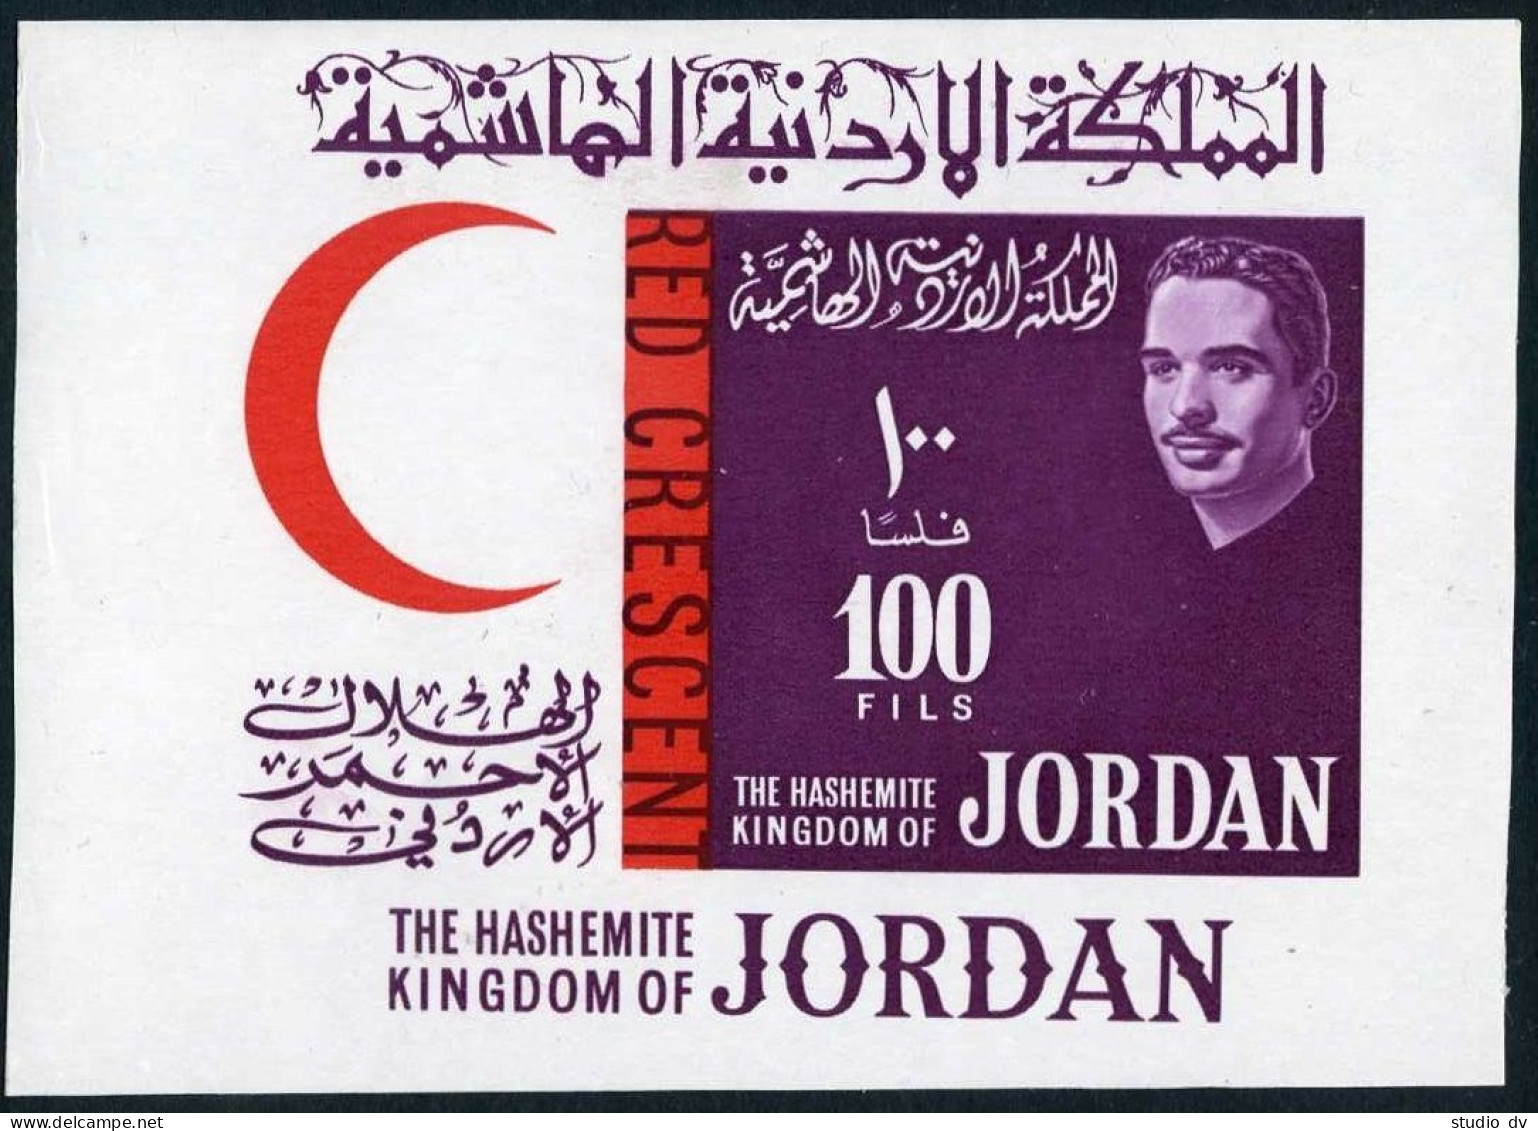 Jordan 407-412,412a,MNH.Michel 402-407,Bl.5. Red Crescent,Red Cross-100.Hussein. - Jordanien